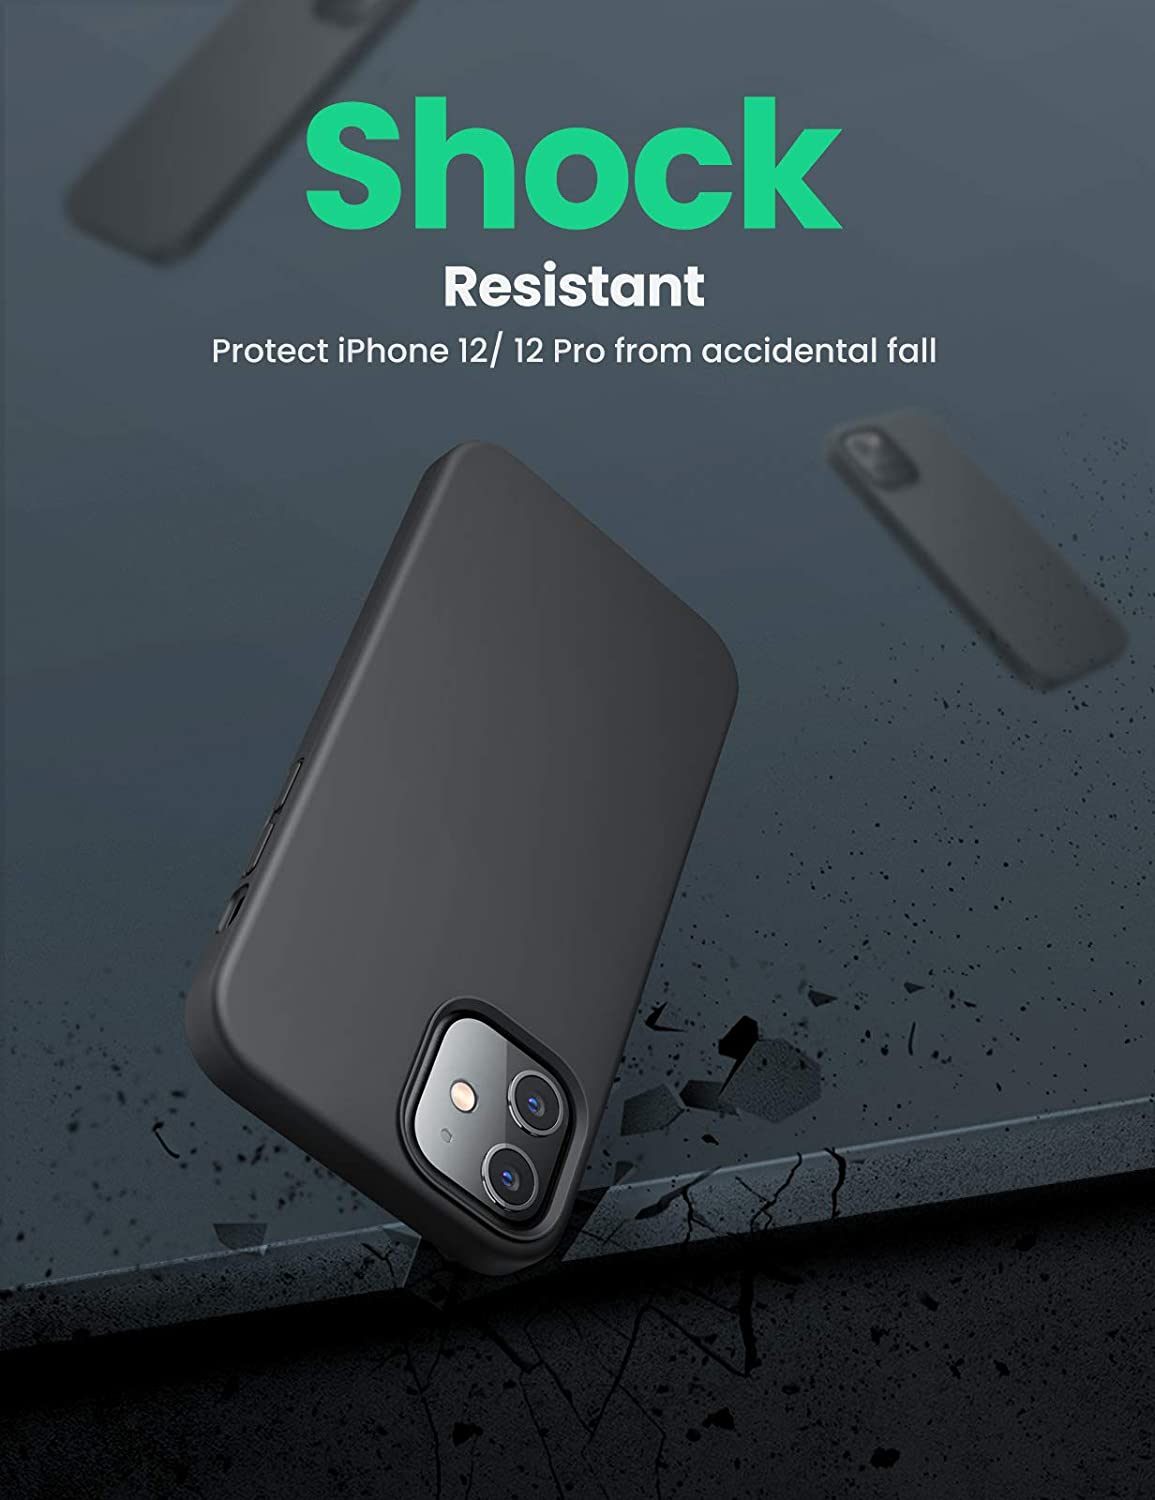 Ốp iPhone 12 mini UGREEN LP417 - Chất liệu Silicon cao cấp - Độ đàn hồi cao, chống thấm nước - Kích thước 6.1 inches